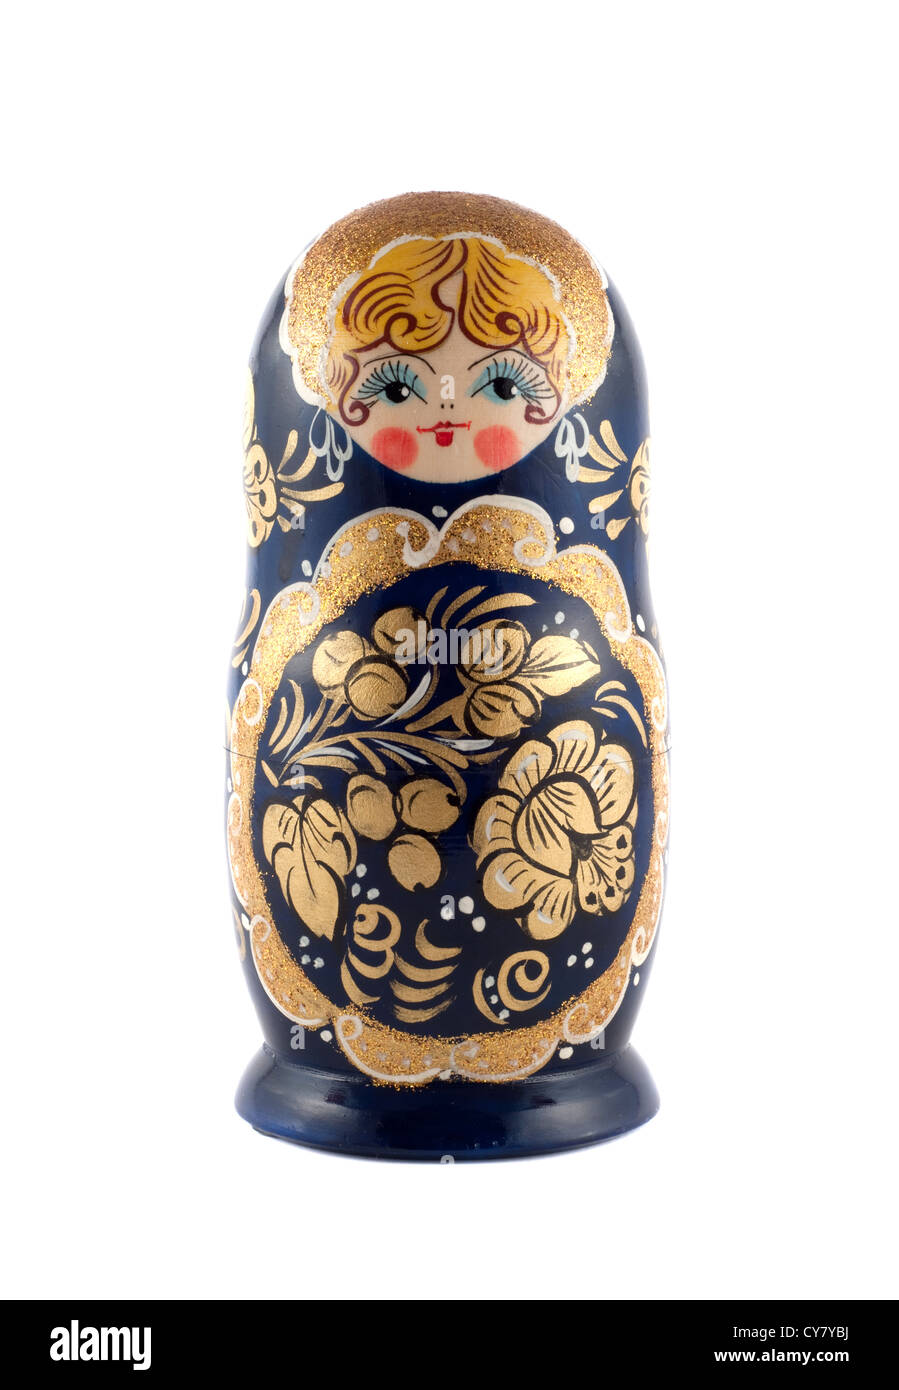 Russian matryoshka doll isolated on white Stock Photo